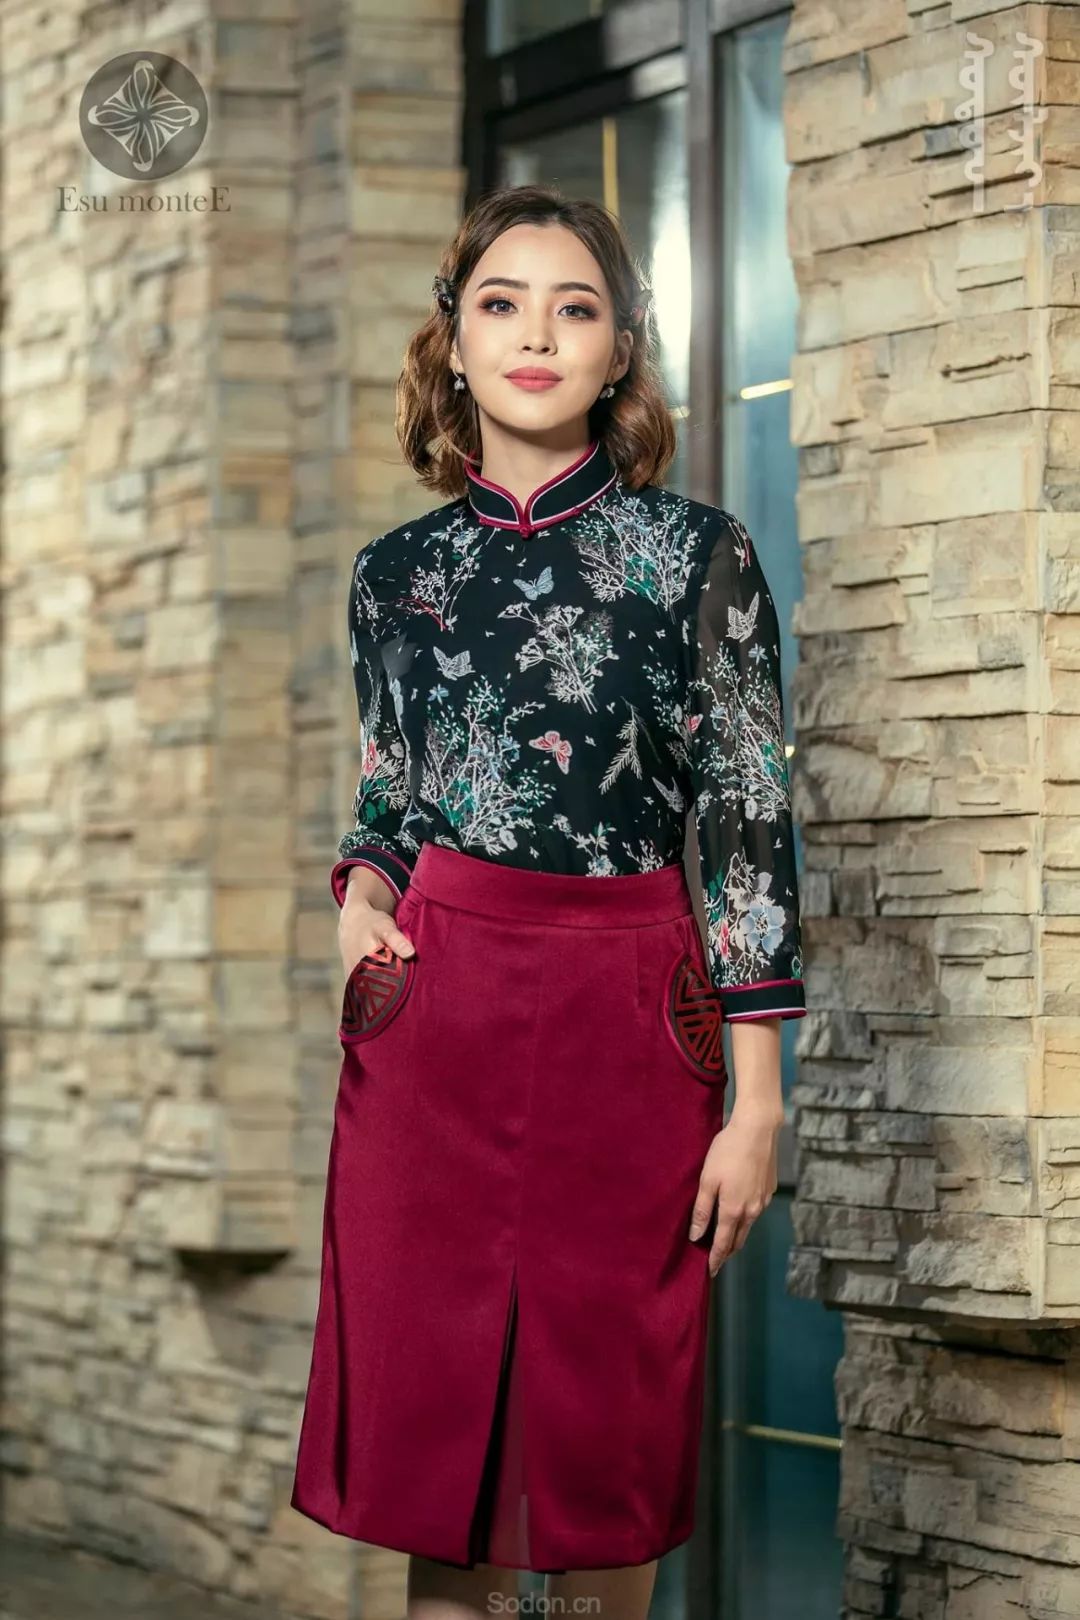 国庆特惠 | Esu蒙古时装 2019新款美衣，全场8.5折起！